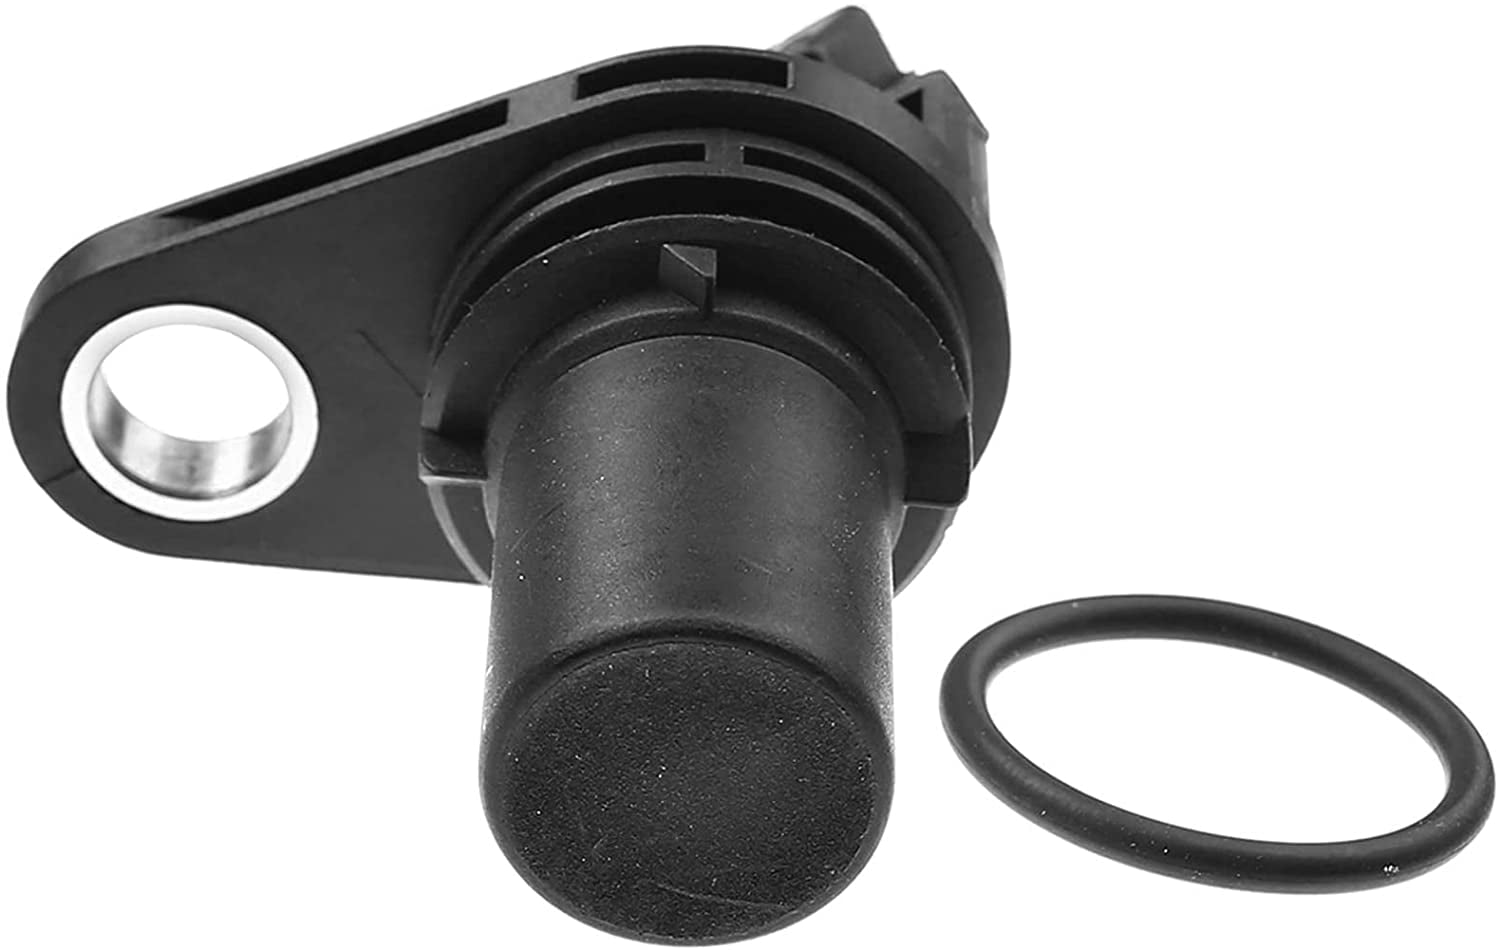 A-Premium Camshaft Position Sensor Compatible with Ford Escape 2001-2006 Focus 2000-2004 Mercury Mystique 1995-2000 